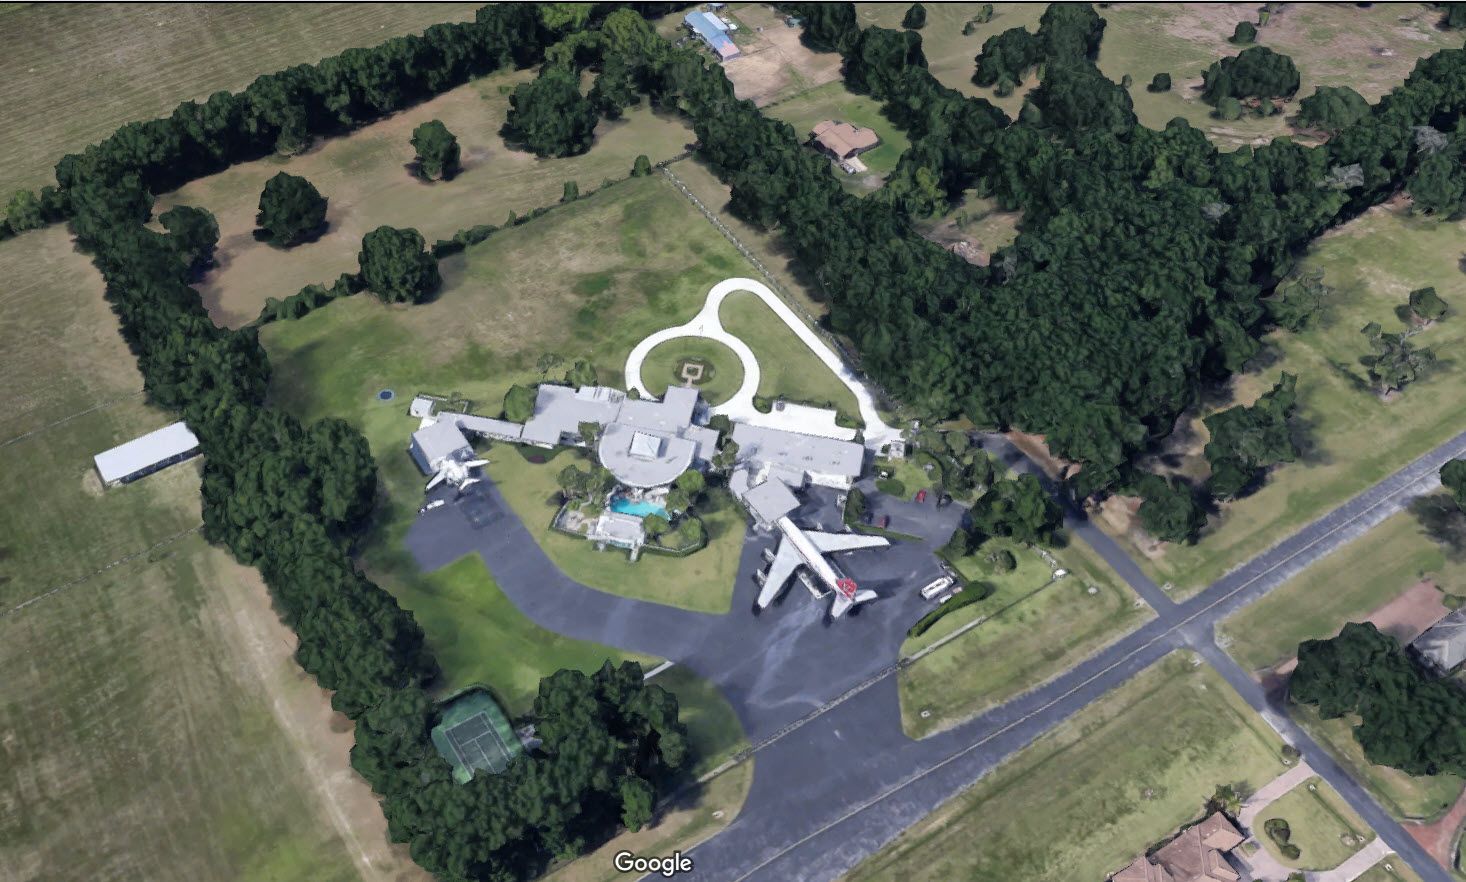 Google Maps Satellite View John Travolta House - Esplora la Terra con la visualizzazione satellitare di Google Maps: 10 luoghi impressionanti da scoprire